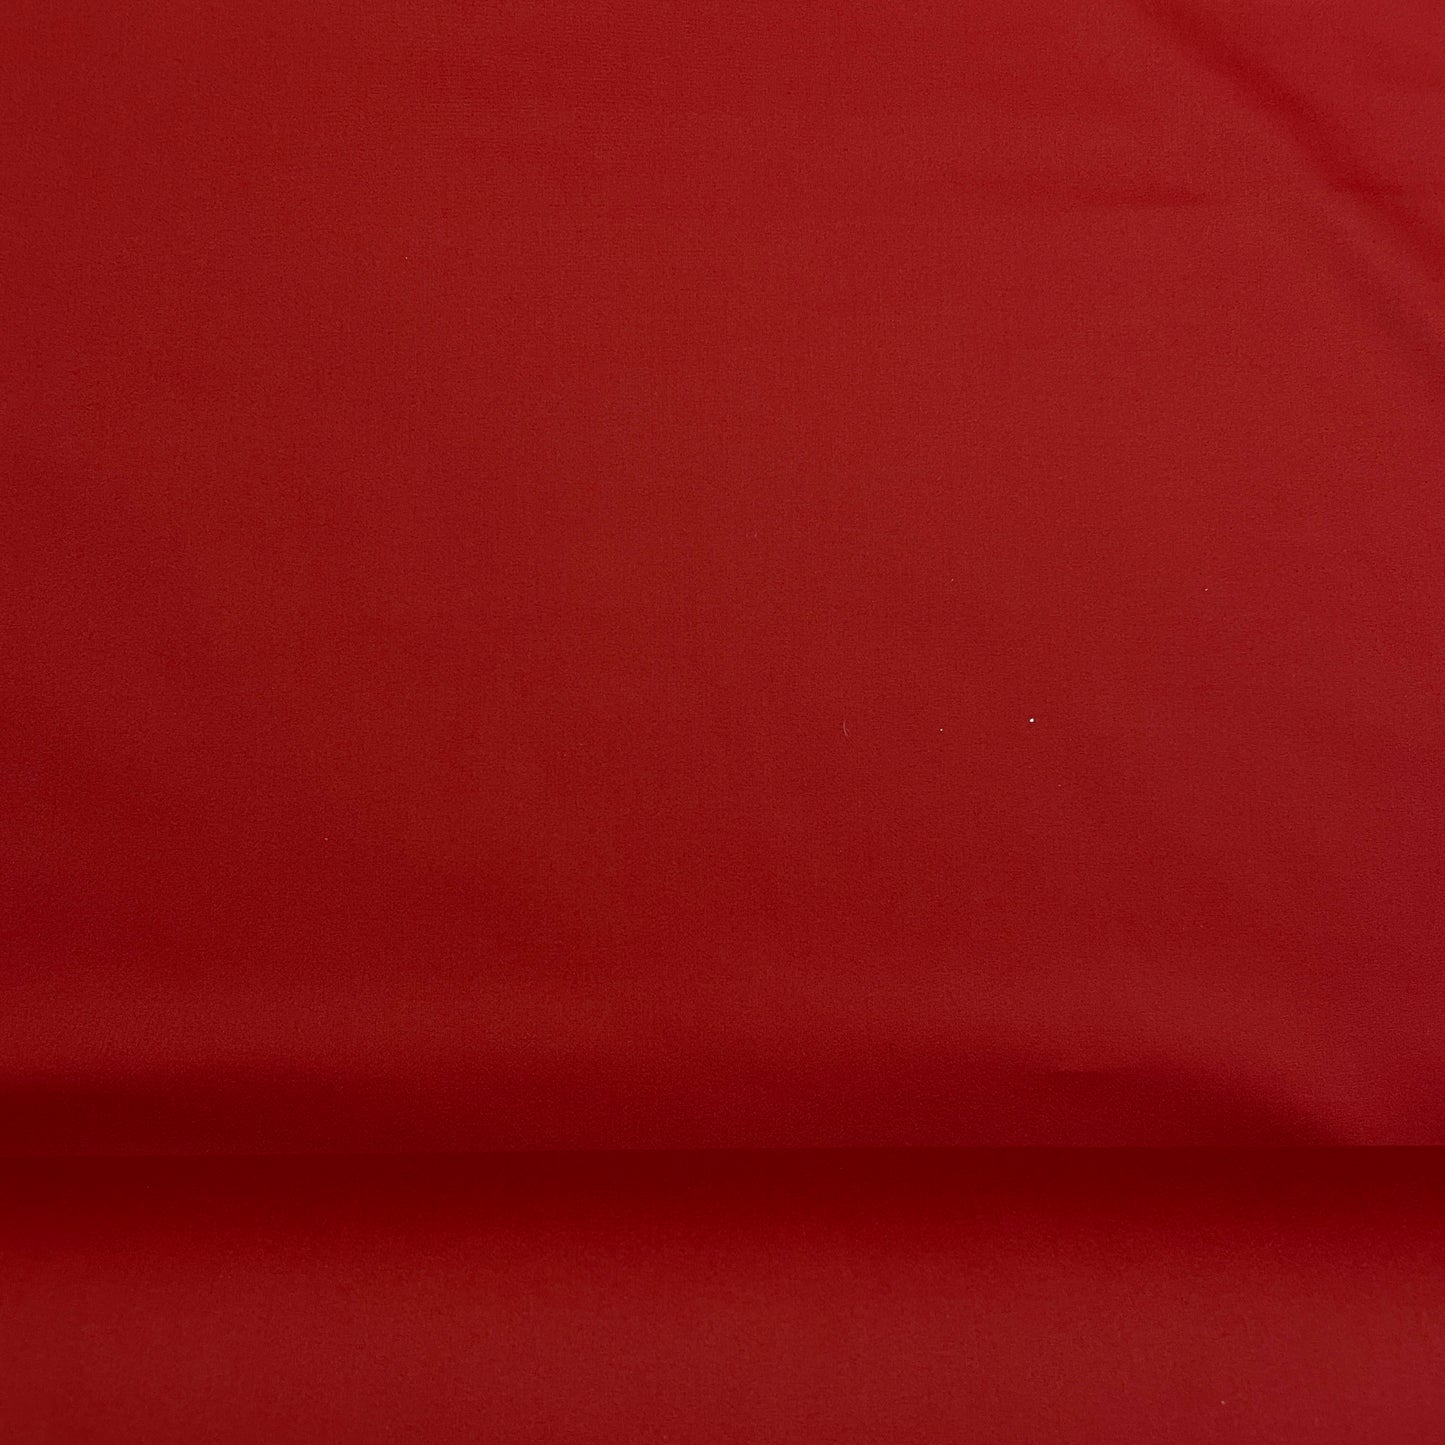 Red Solid Premium Cotton Satin Fabric - TradeUNO